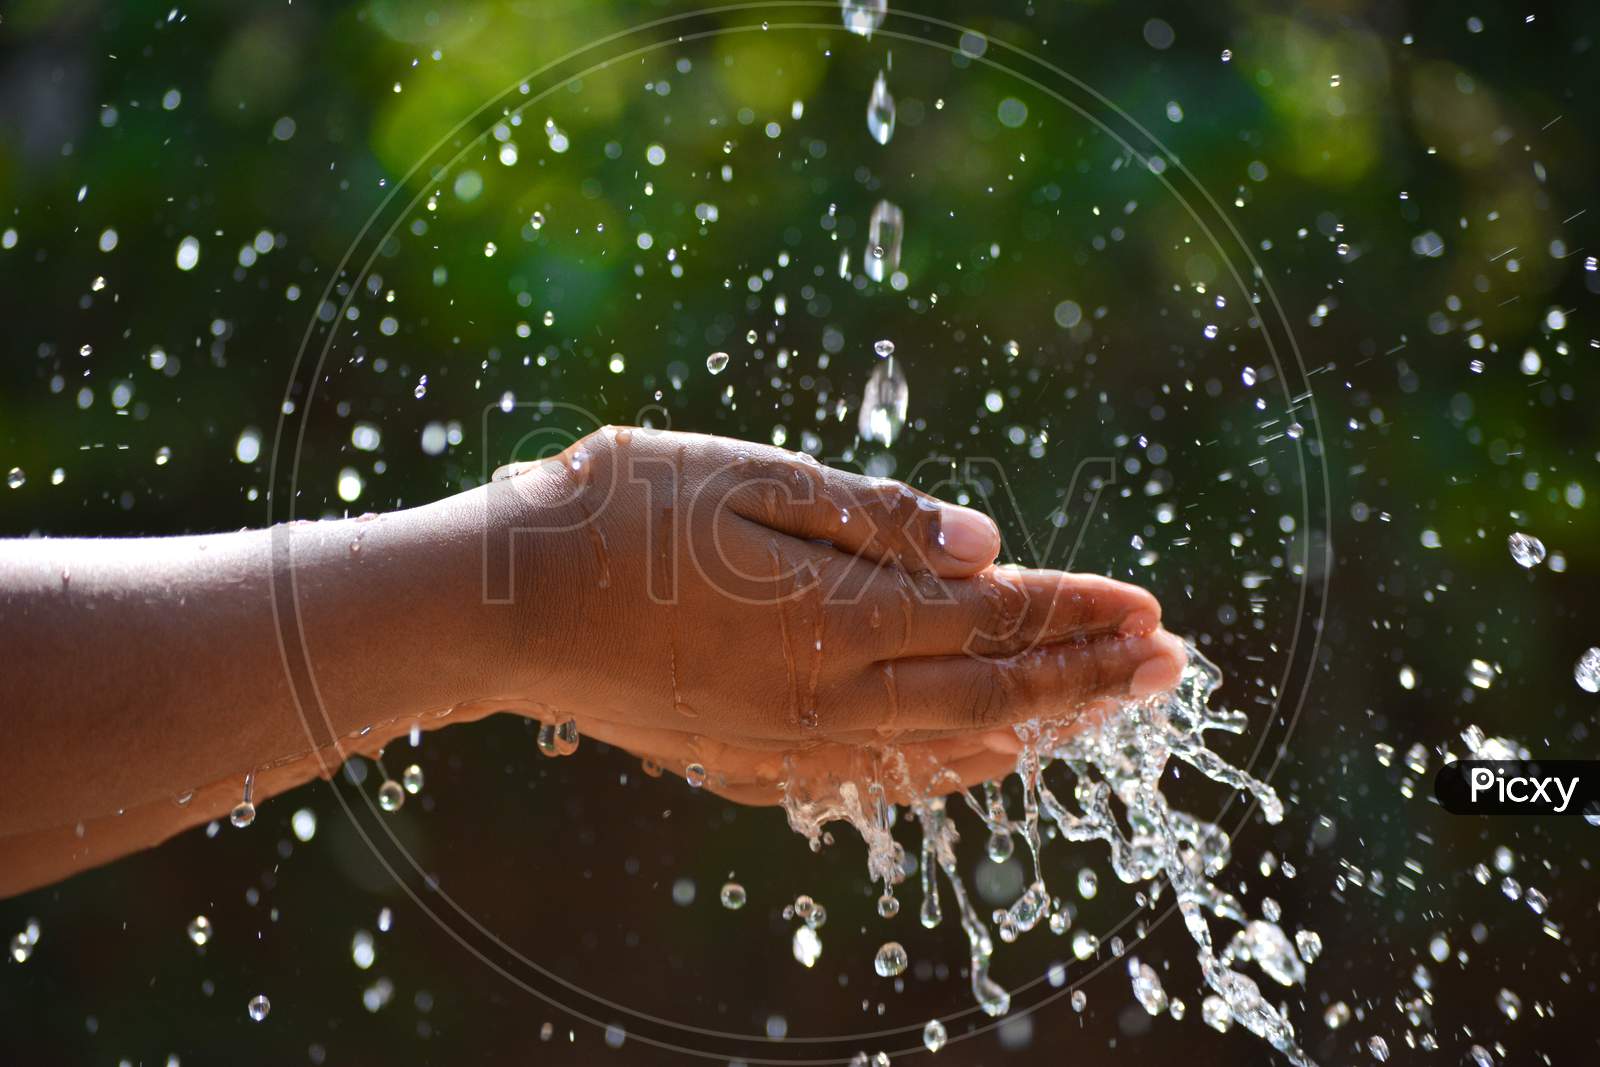 Hands with water splash